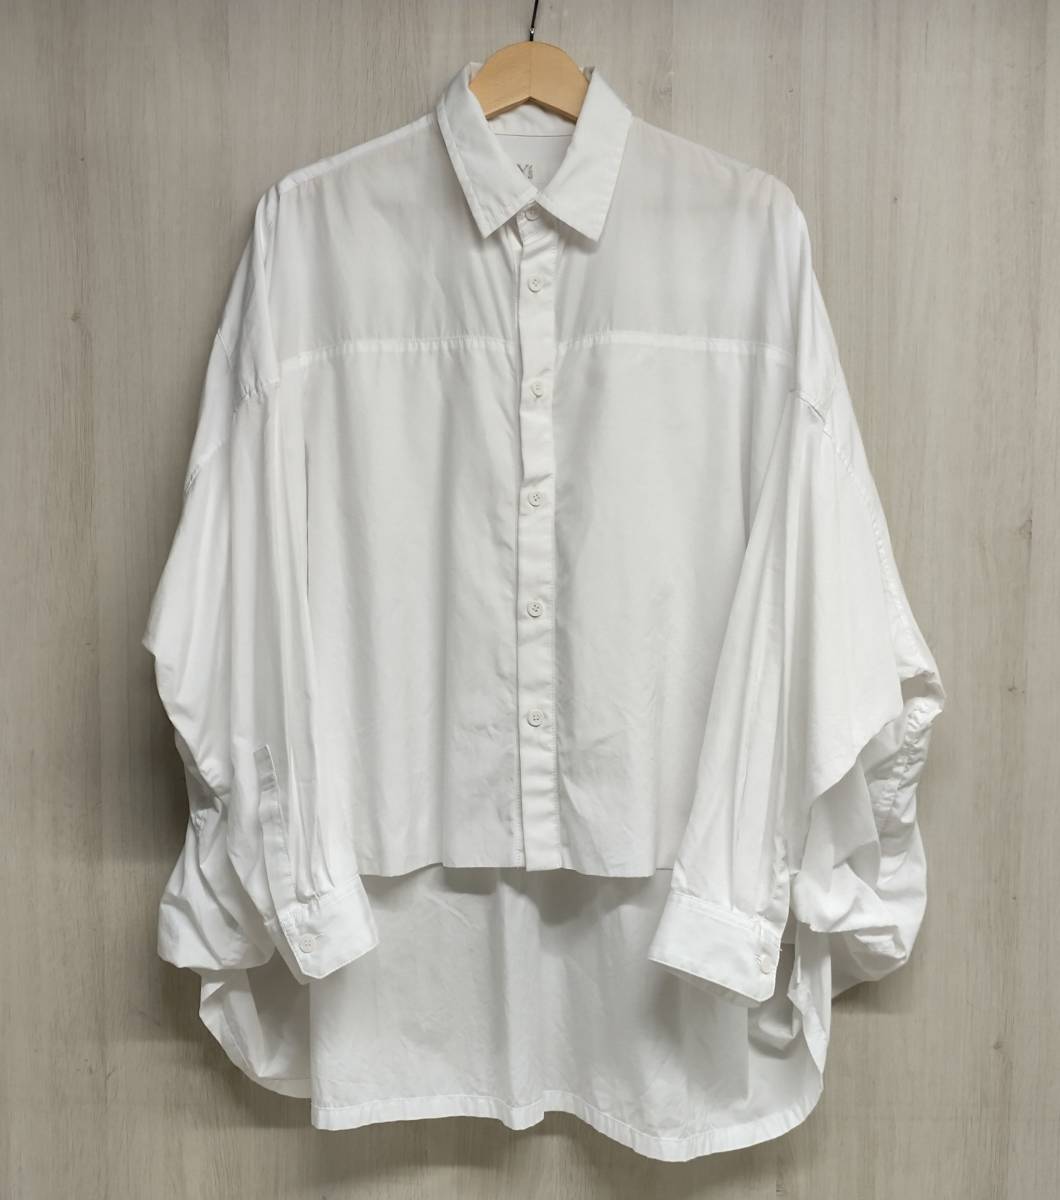 Y’s ワイズ Yohji Yamamoto ヨウジヤマモト YD-B12-001 長袖シャツ ブラウス ホワイト コットン 日本製 店舗受取可